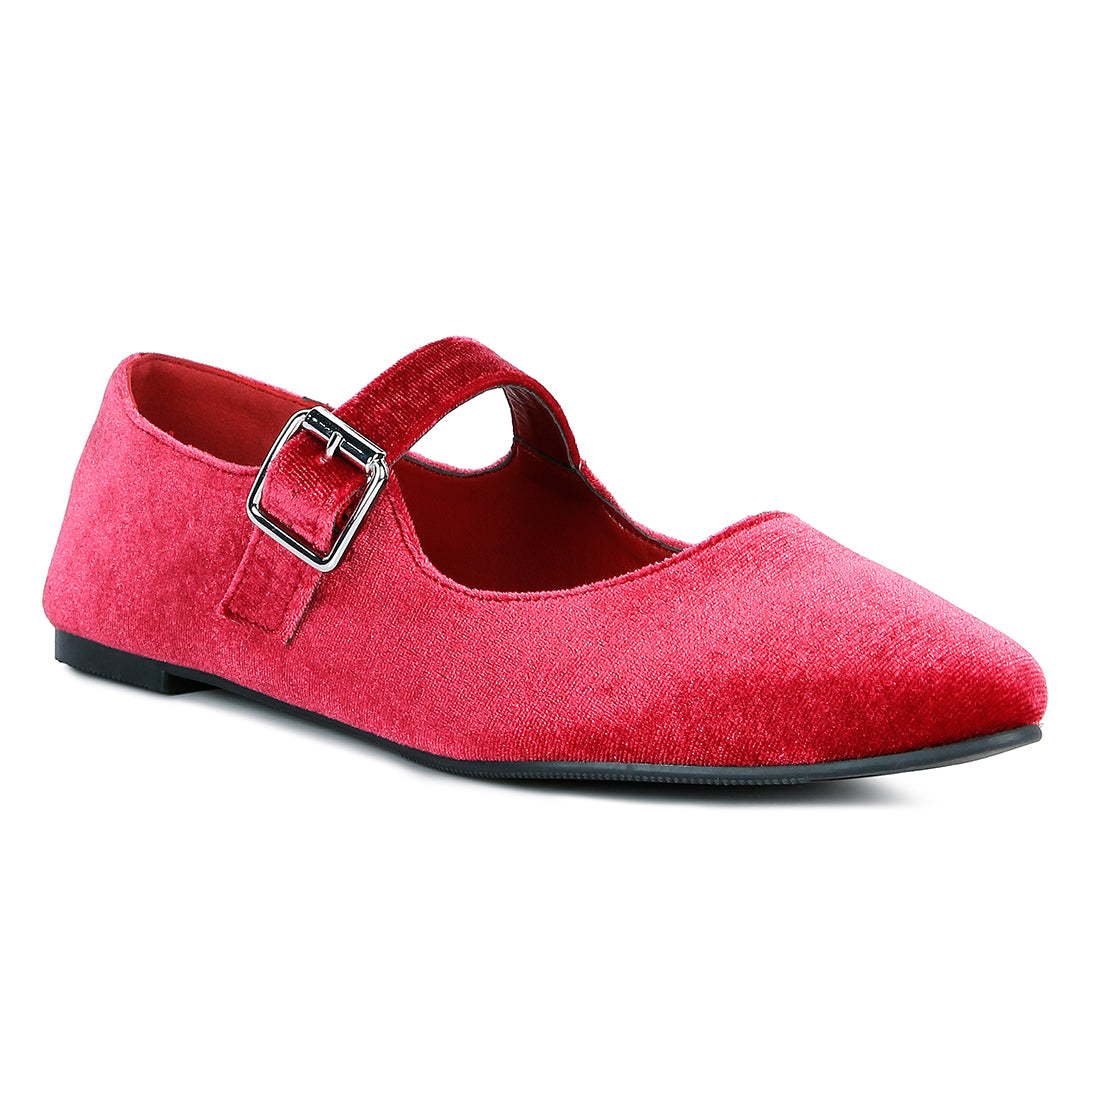 Red Velvet Mary Jane Flat Sandals